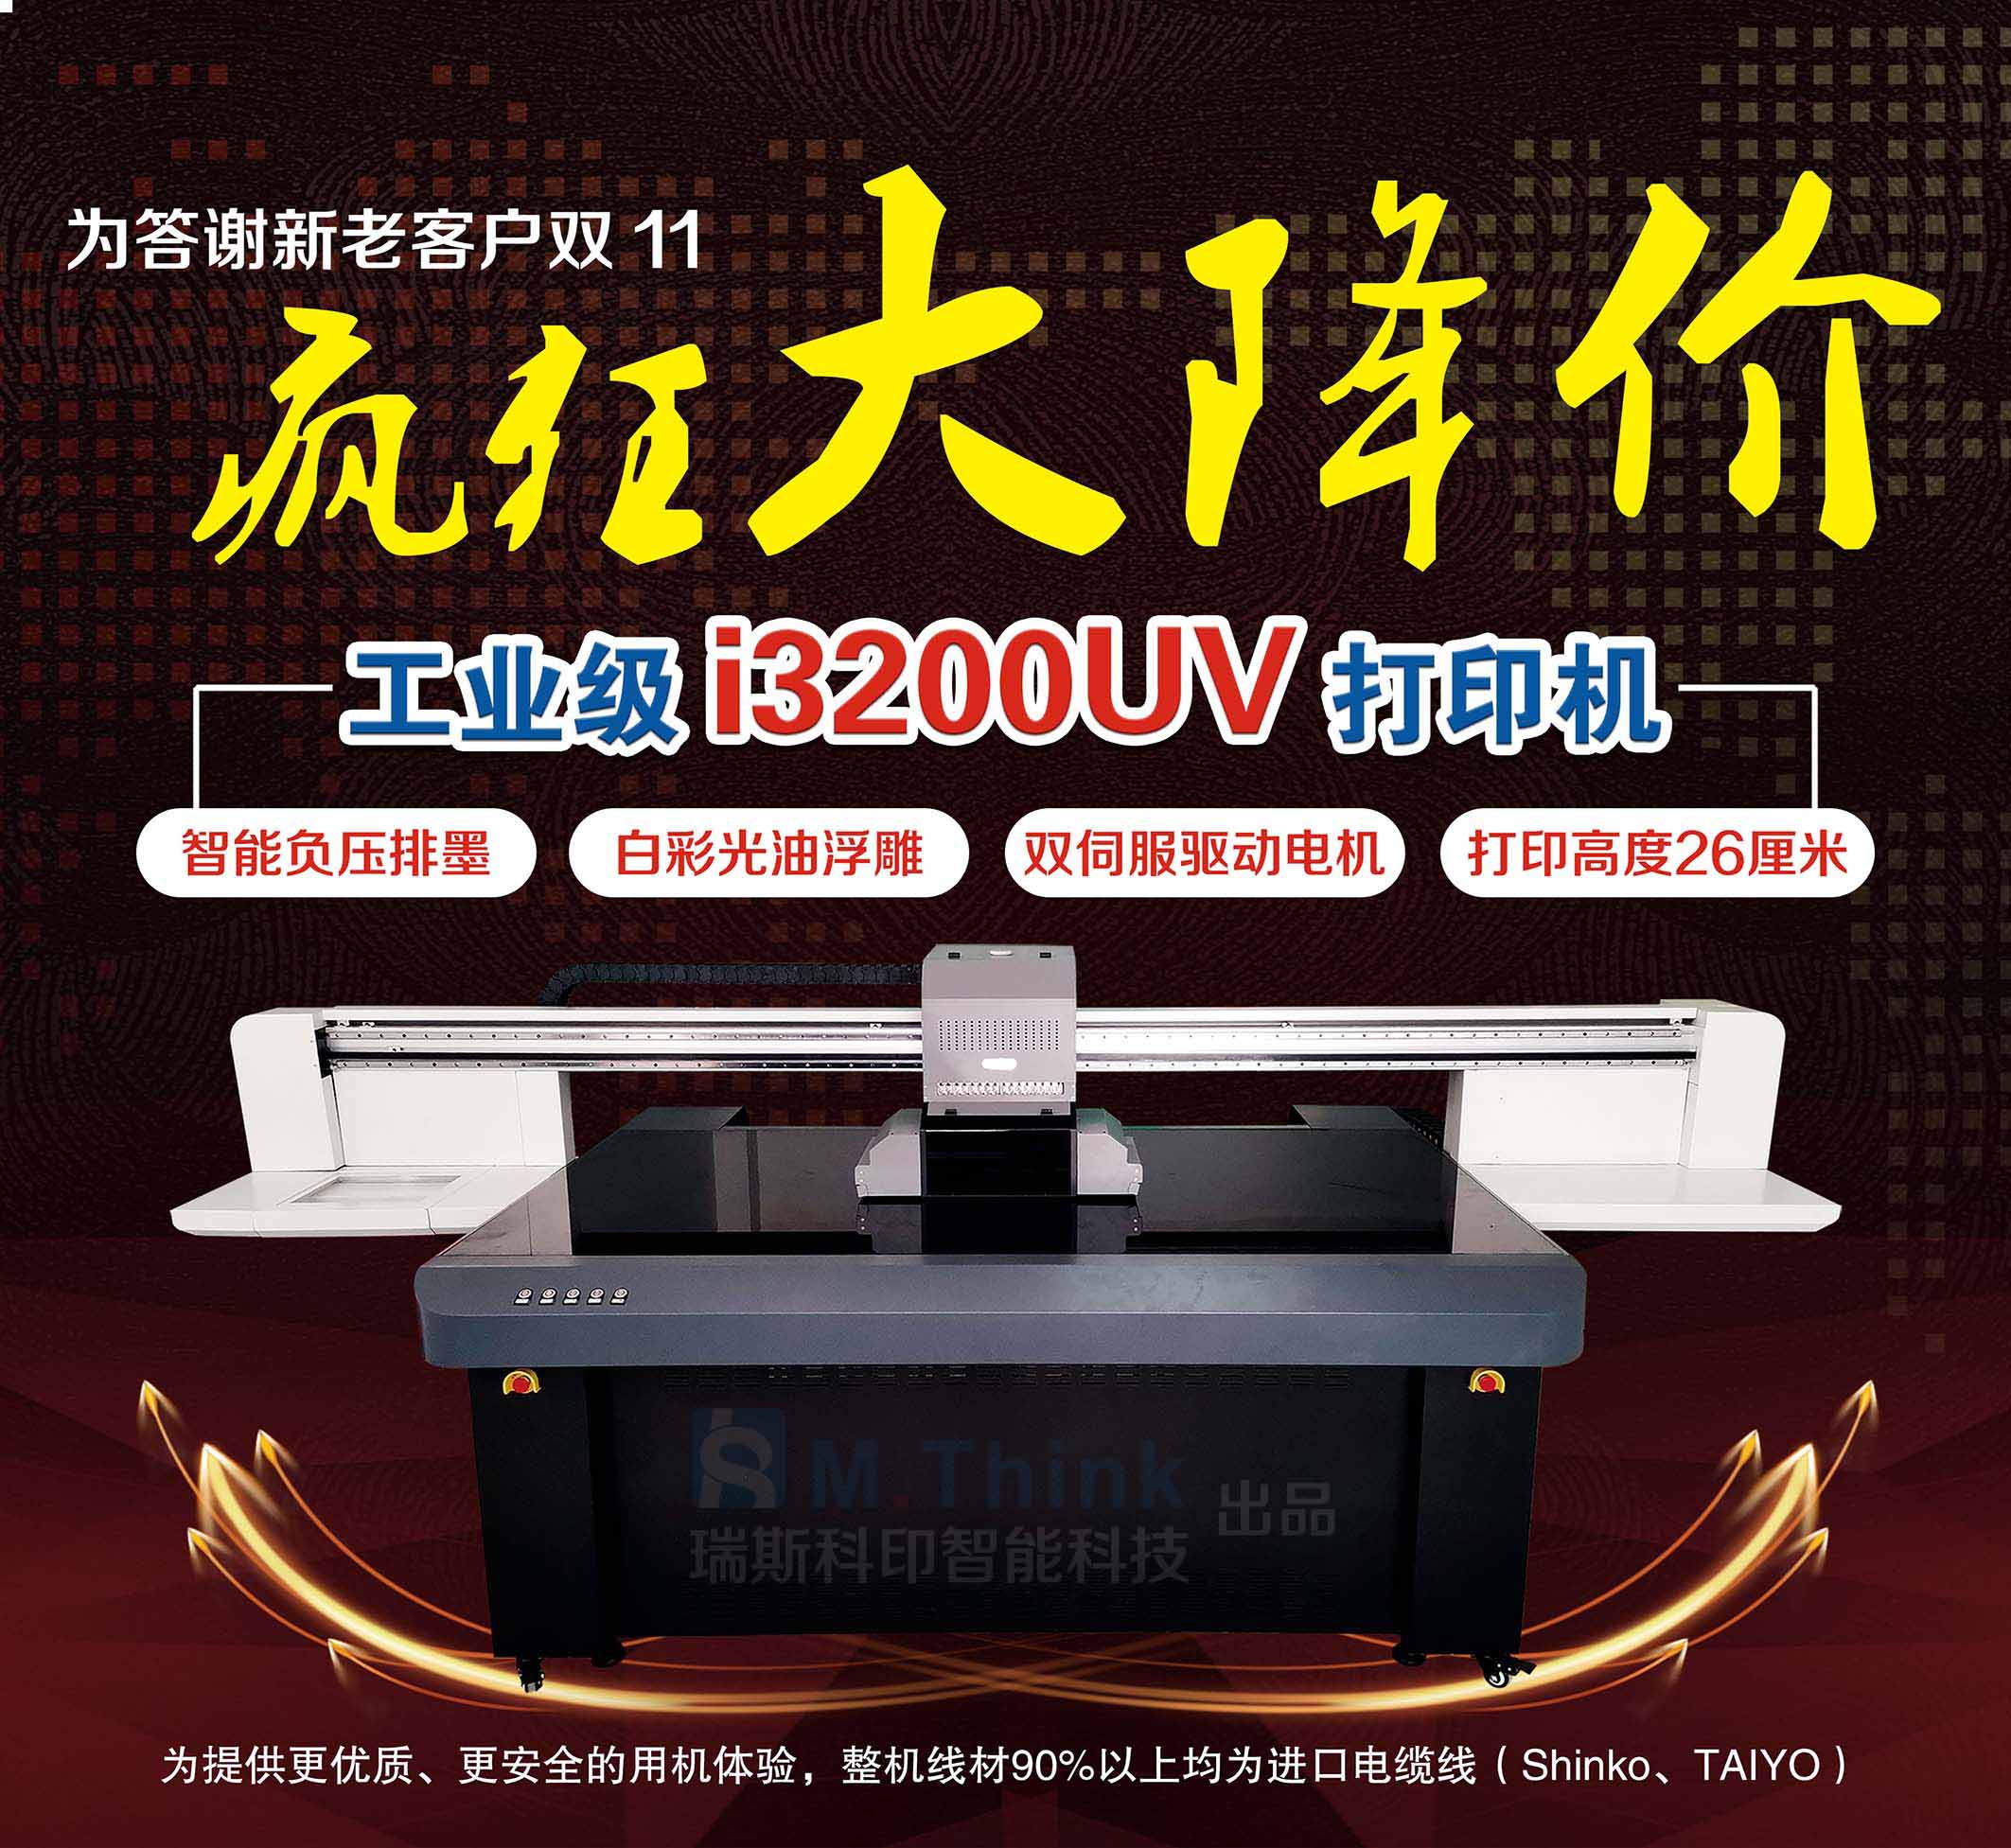 深圳瑞斯科印 爱普生工业级i3200UV打印机 爱普生工业级4720UV打印机 玻璃瓷砖UV打印机 广告印刷机